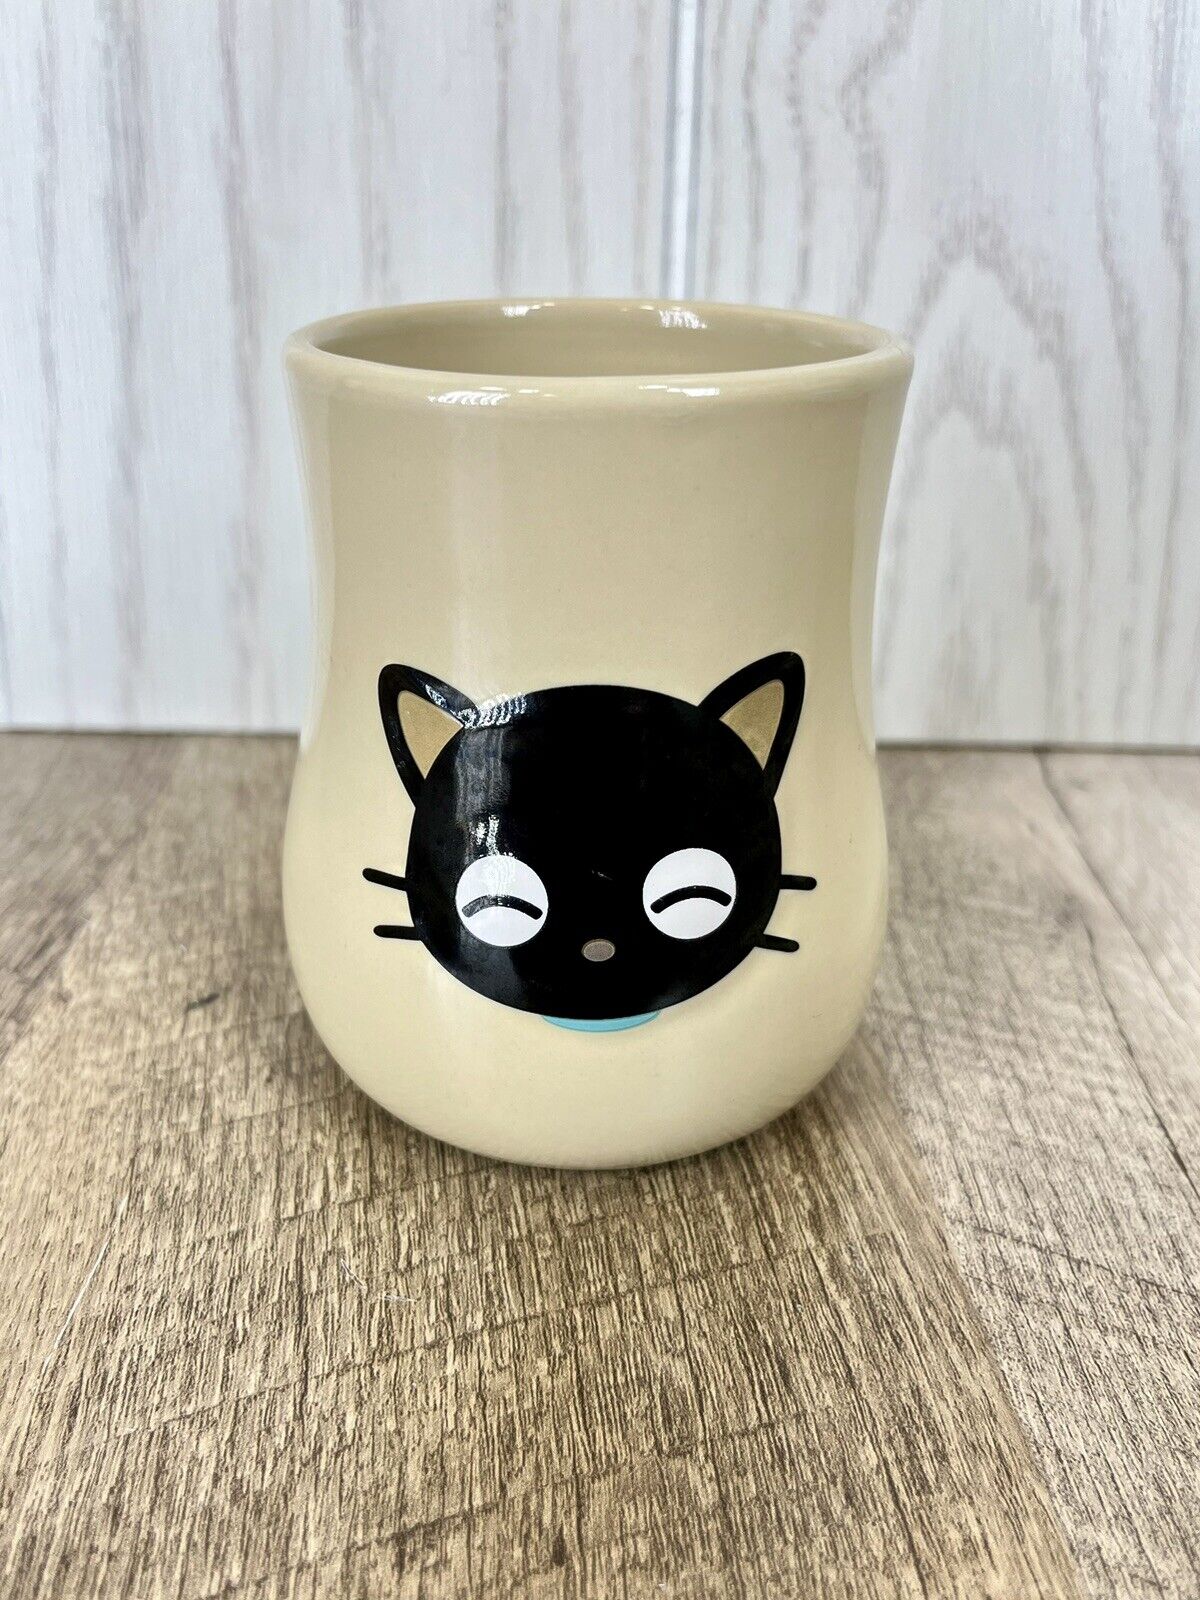 Sanrio Chococat Small Ceramic Juice Mug Or Rinse Cup Pencil Cup Vintage Y2K RARE